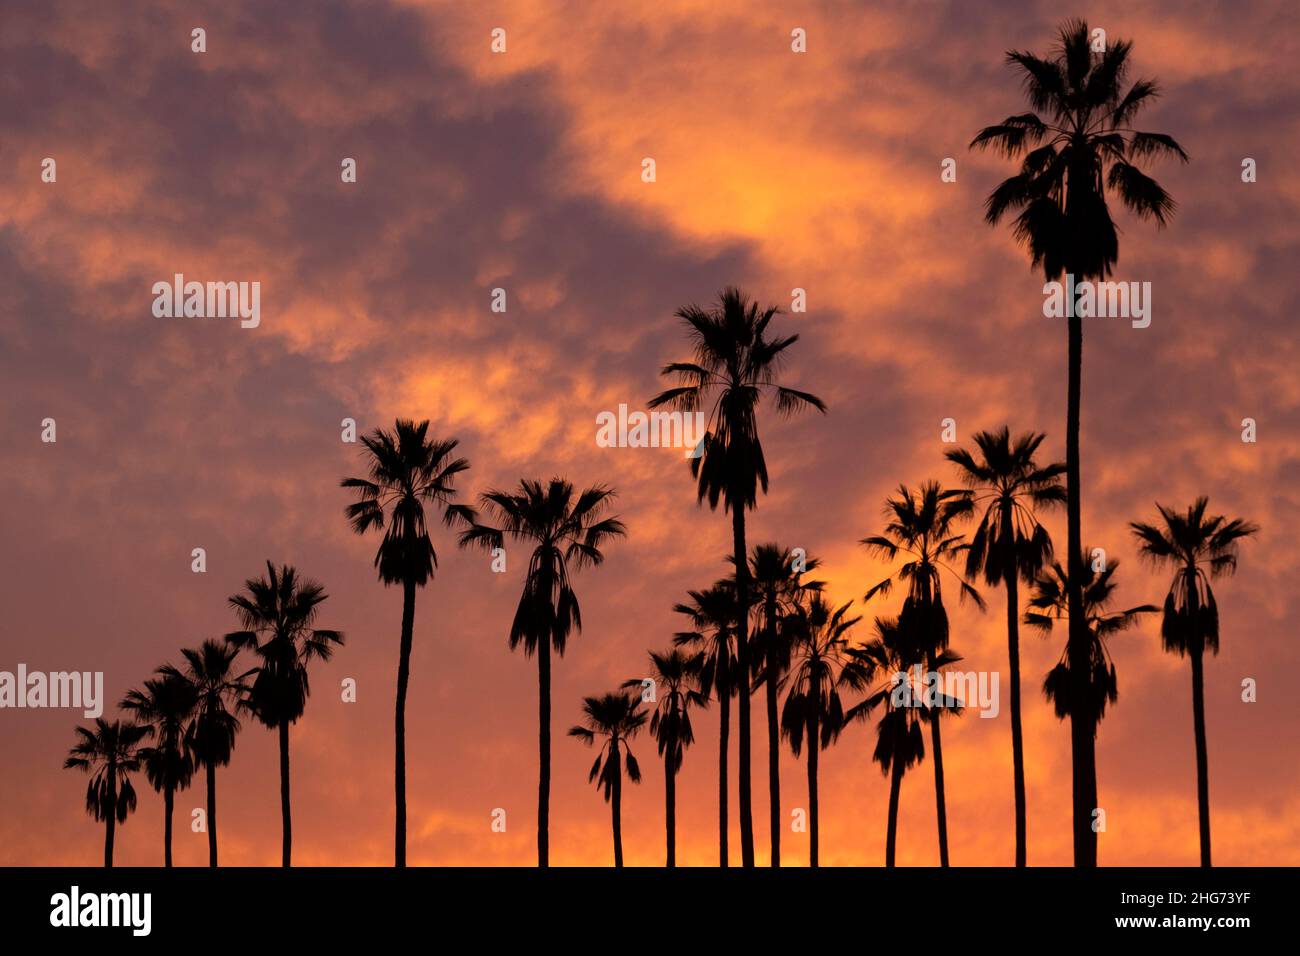 Silueta de una línea de altas palmeras contra una puesta de sol dorada y naranja en Los Ángeles, California Foto de stock